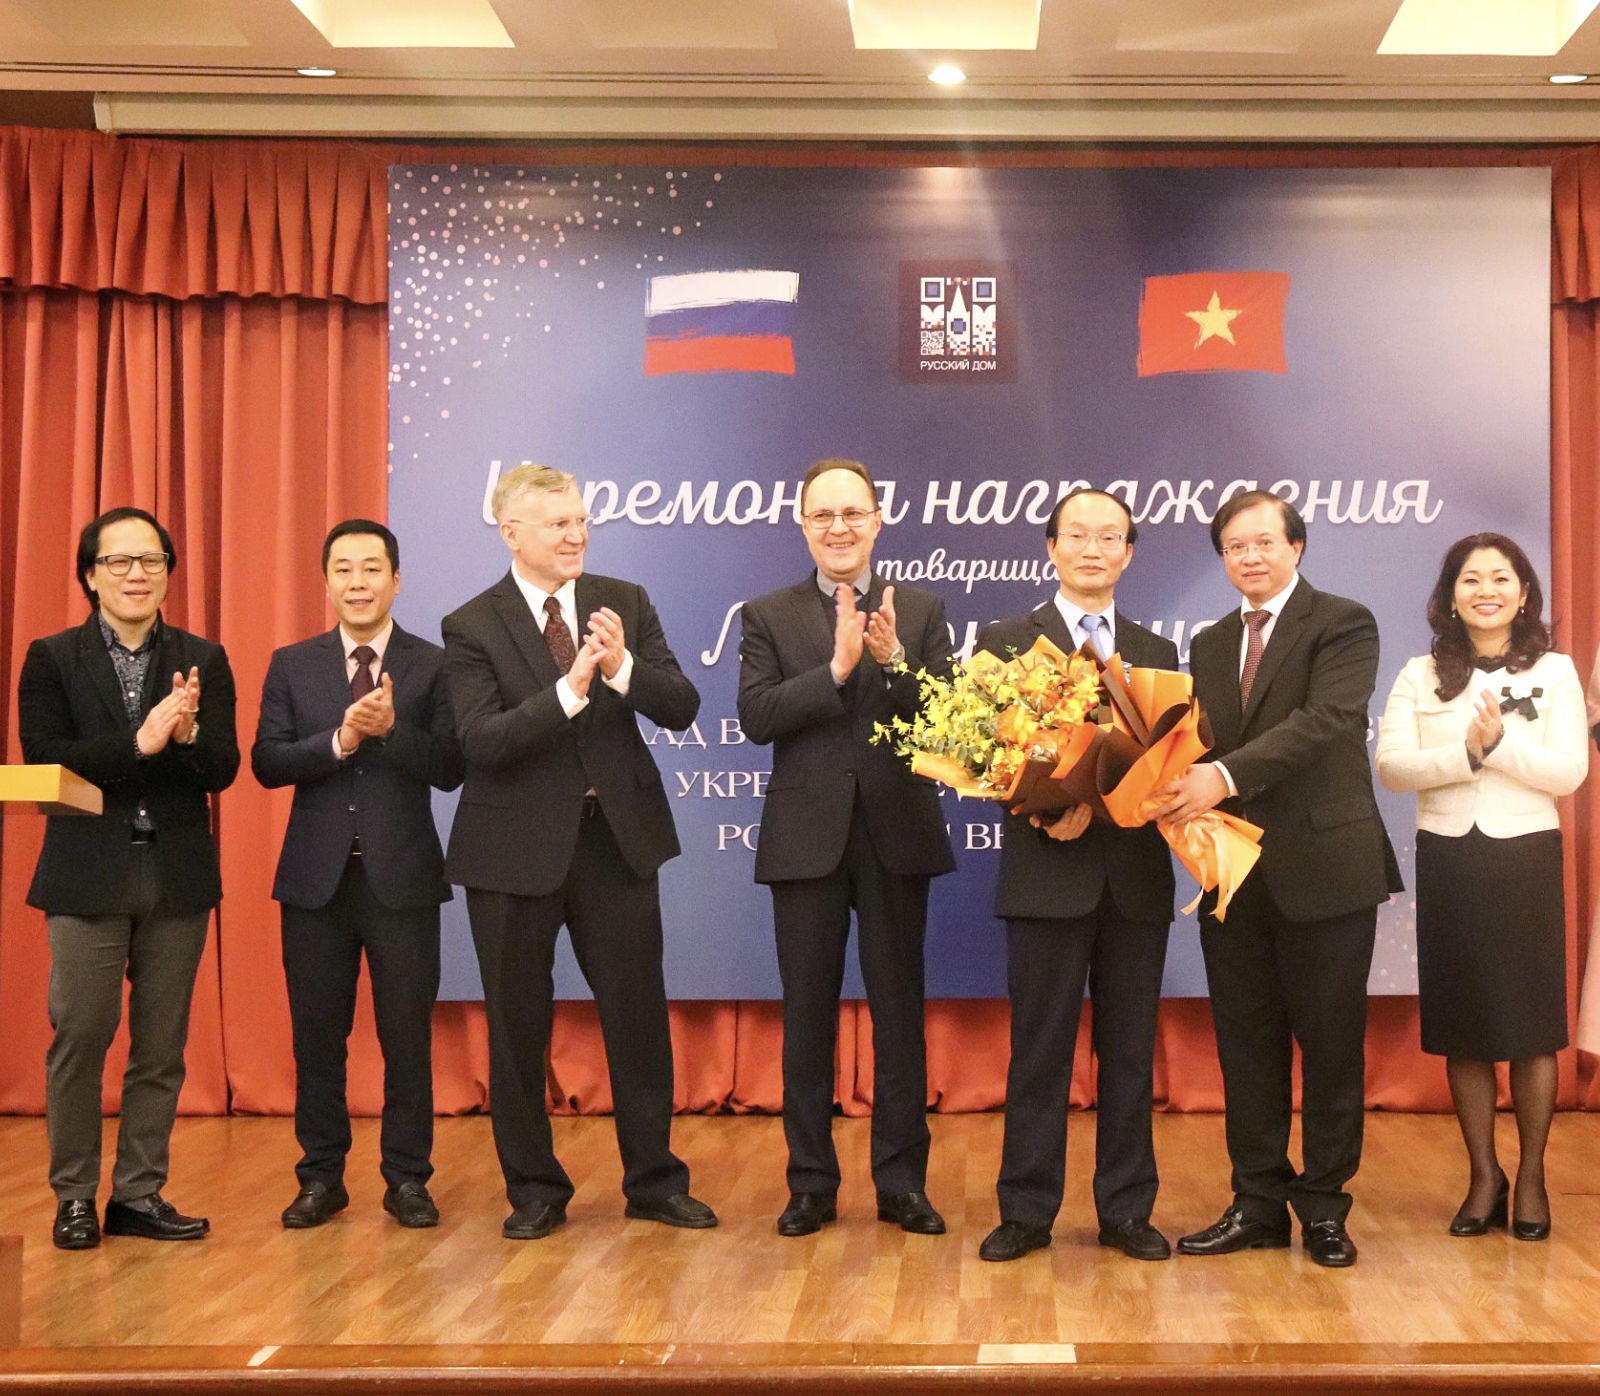 Cơ quan Hợp tác Liên bang Nga tặng Kỷ niệm chương cho nguyên Phó Cục trưởng Cục Hợp tác quốc tế Bộ Văn hóa, Thể thao và Du lịch Lê Ngọc Định